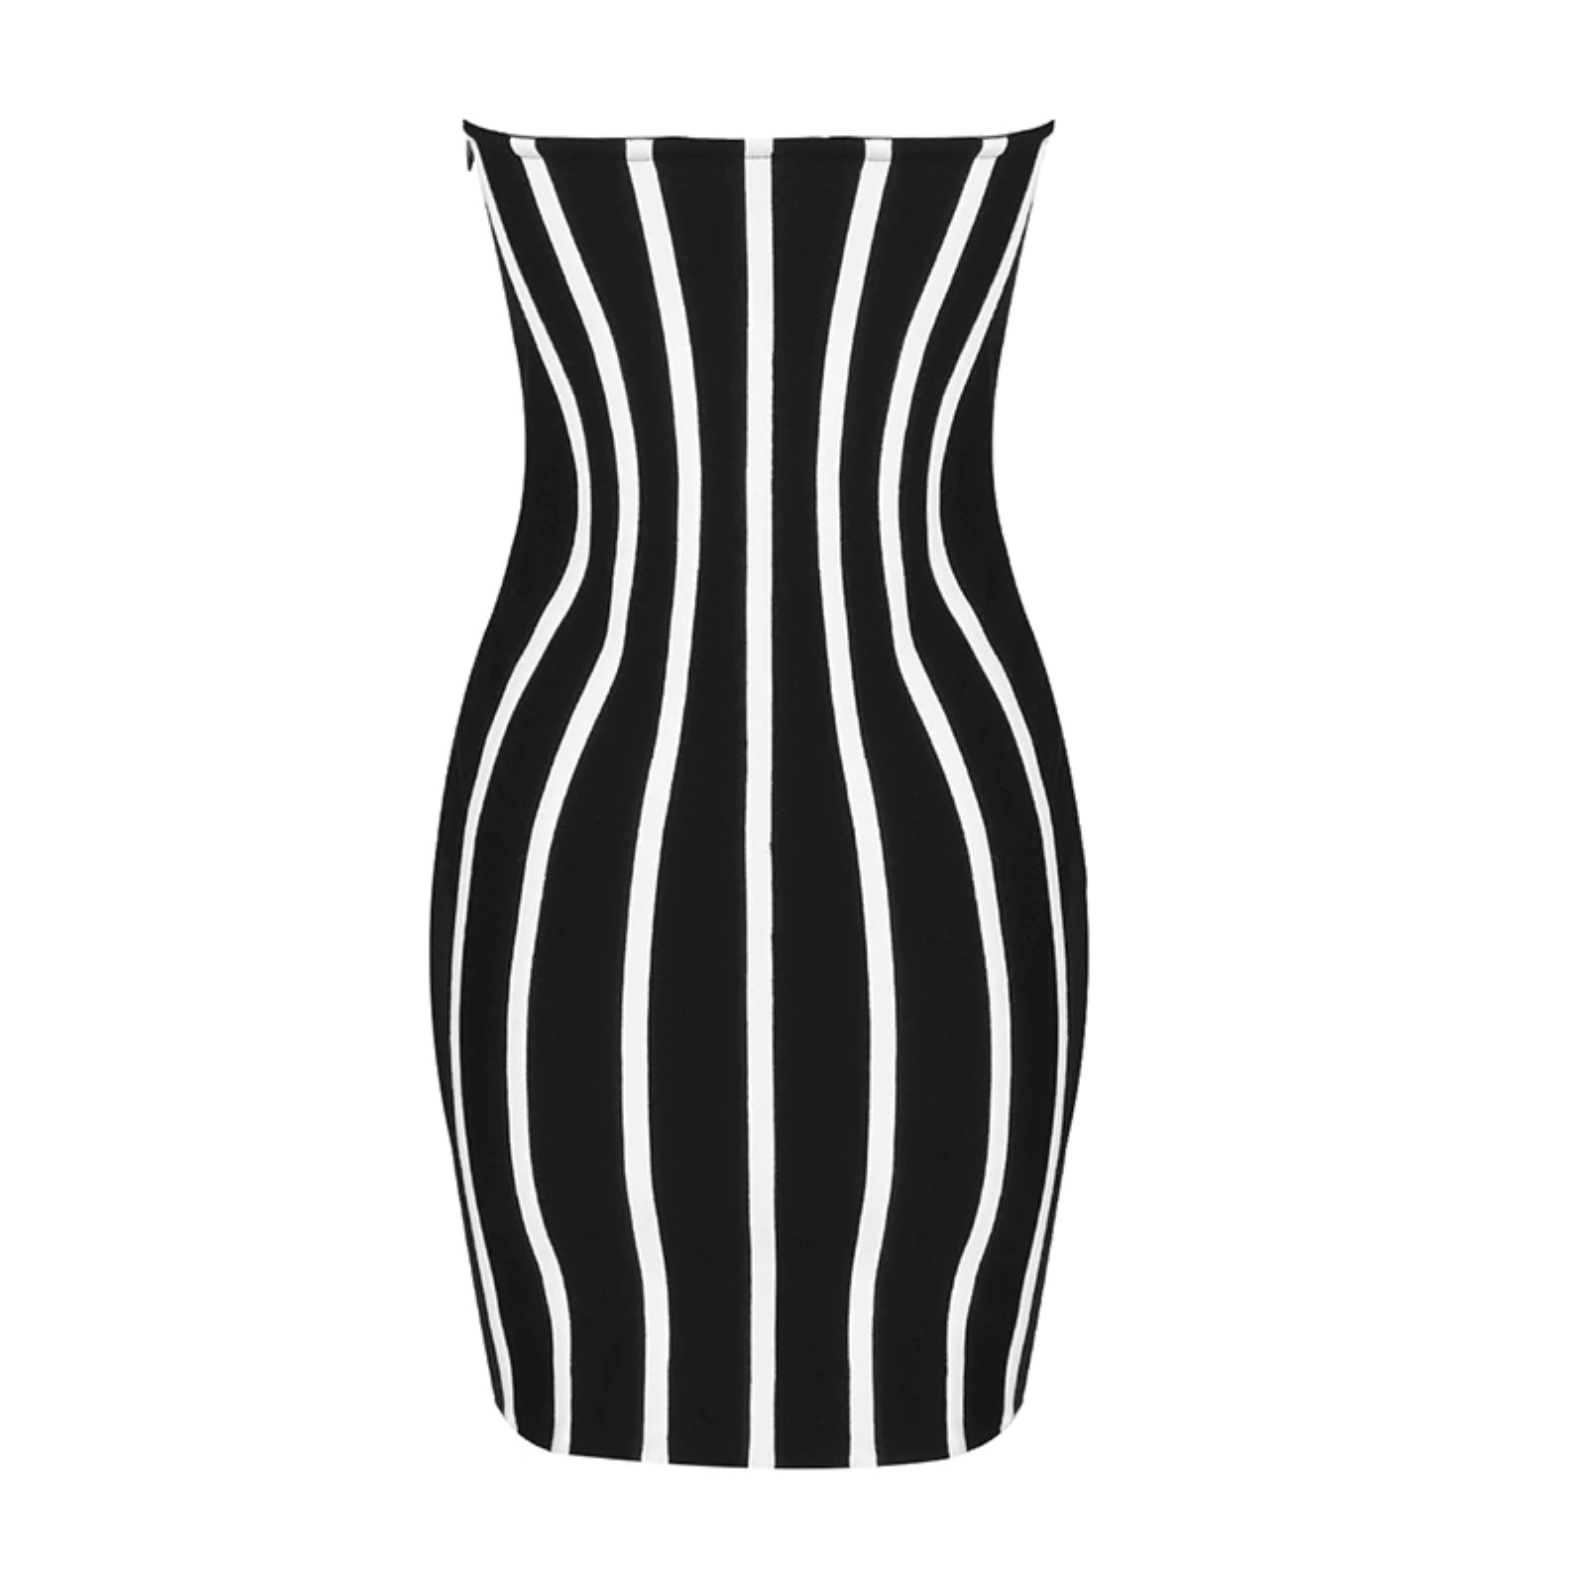 mini striped dress 